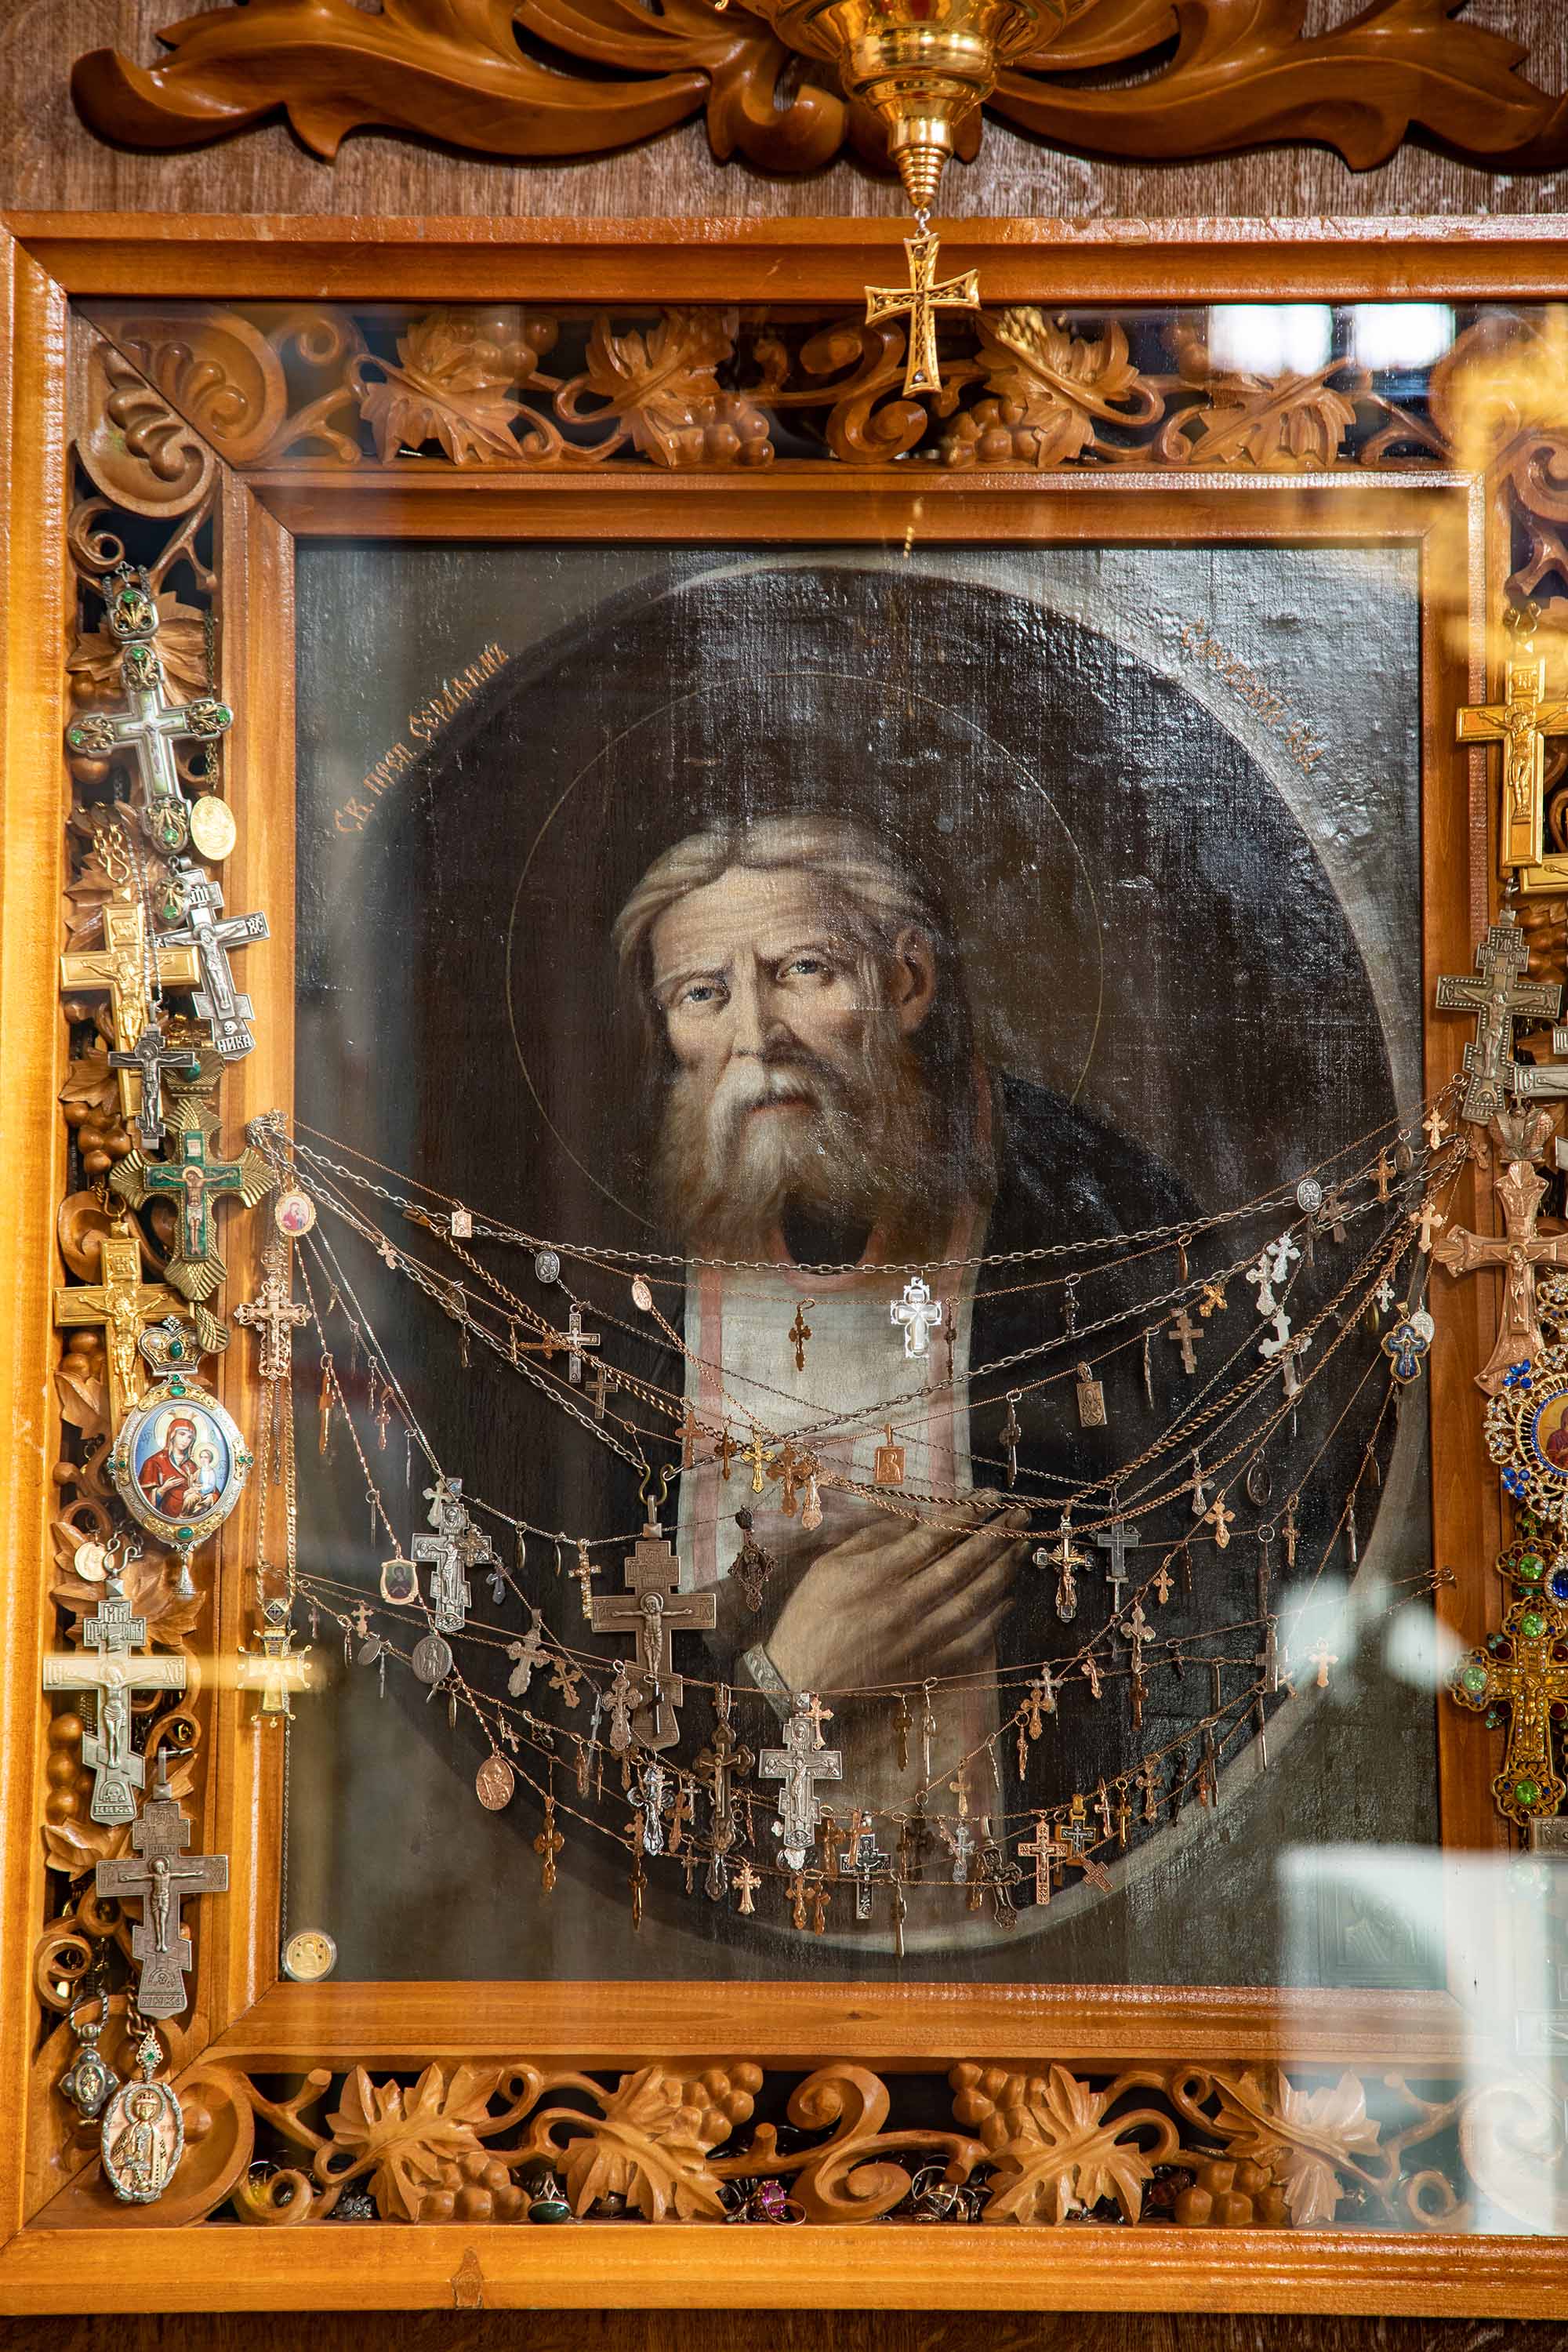 Икона преподобного Серафима Саровского 